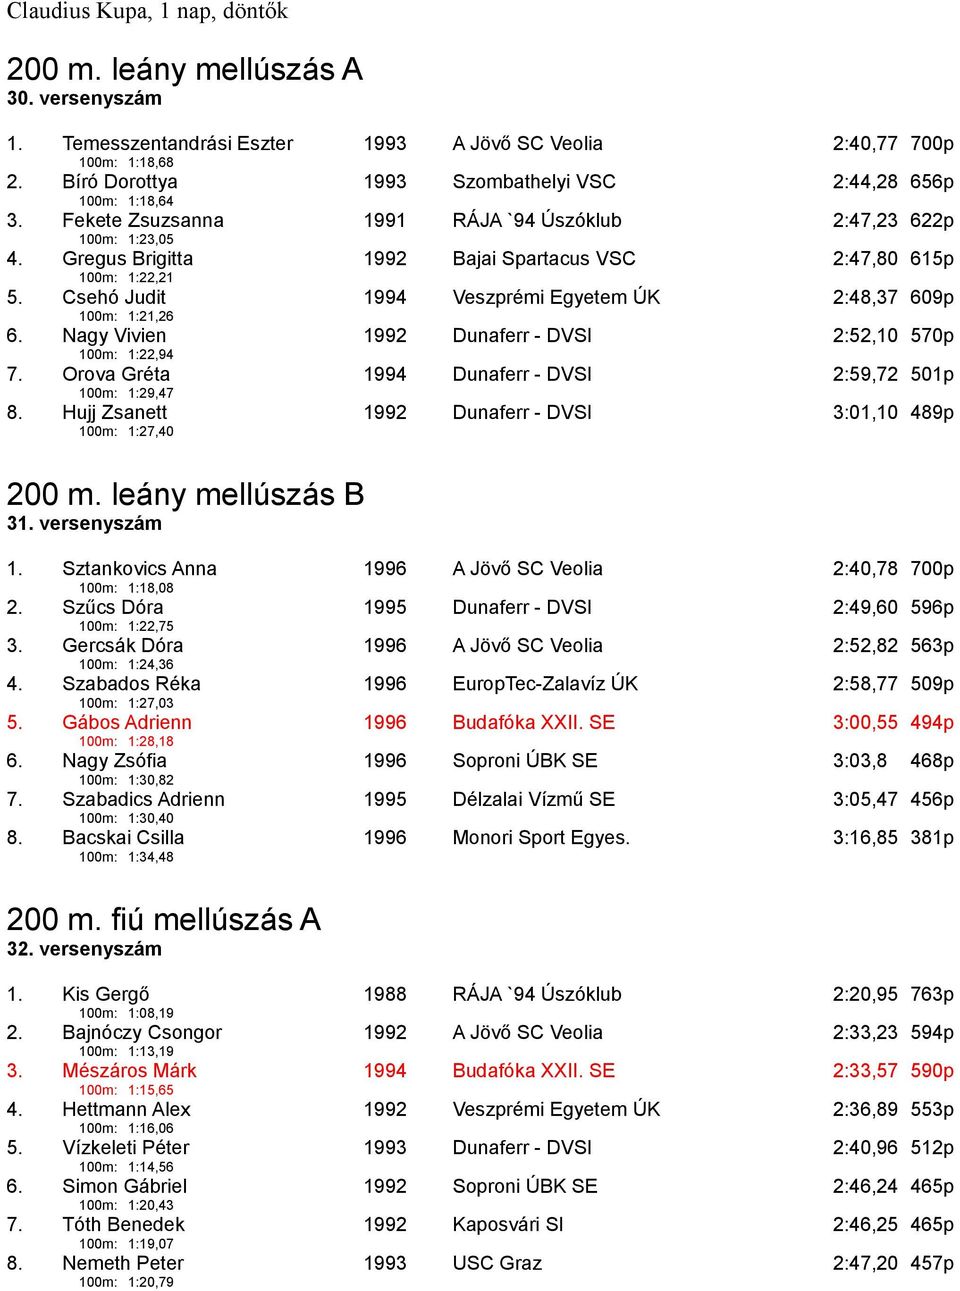 Gregus Brigitta 1992 Bajai Spartacus VSC 2:47,80 615p 100m: 1:22,21 5. Csehó Judit 1994 Veszprémi Egyetem ÚK 2:48,37 609p 100m: 1:21,26 6.